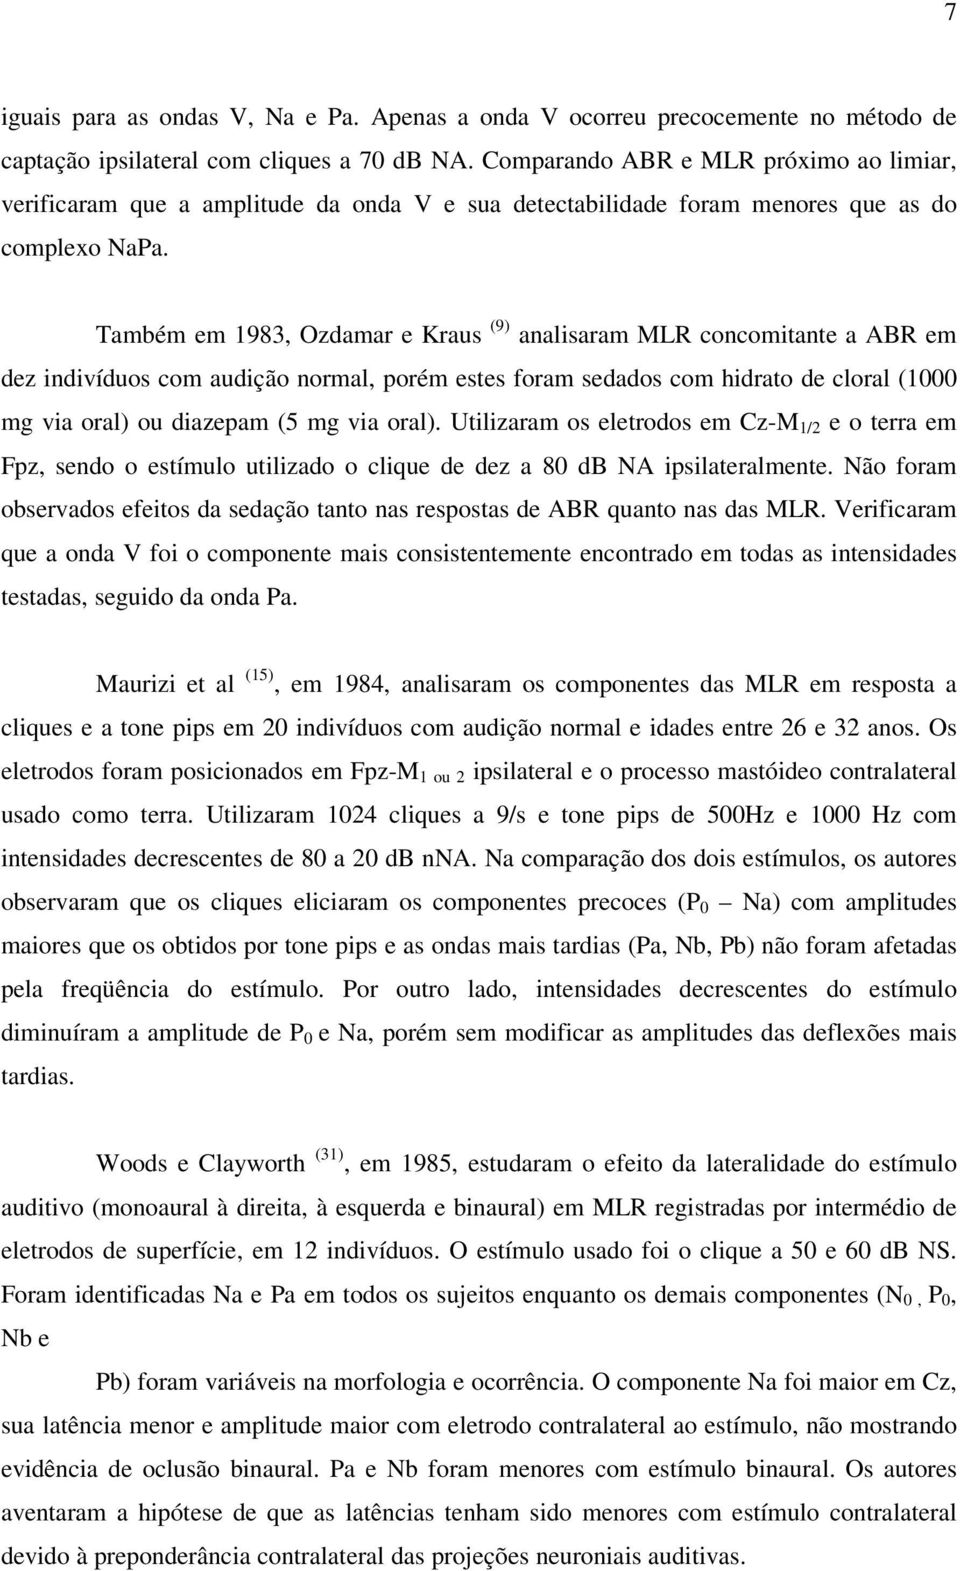 Também em 1983, Ozdamar e Kraus (9) analisaram MLR concomitante a ABR em dez indivíduos com audição normal, porém estes foram sedados com hidrato de cloral (1000 mg via oral) ou diazepam (5 mg via